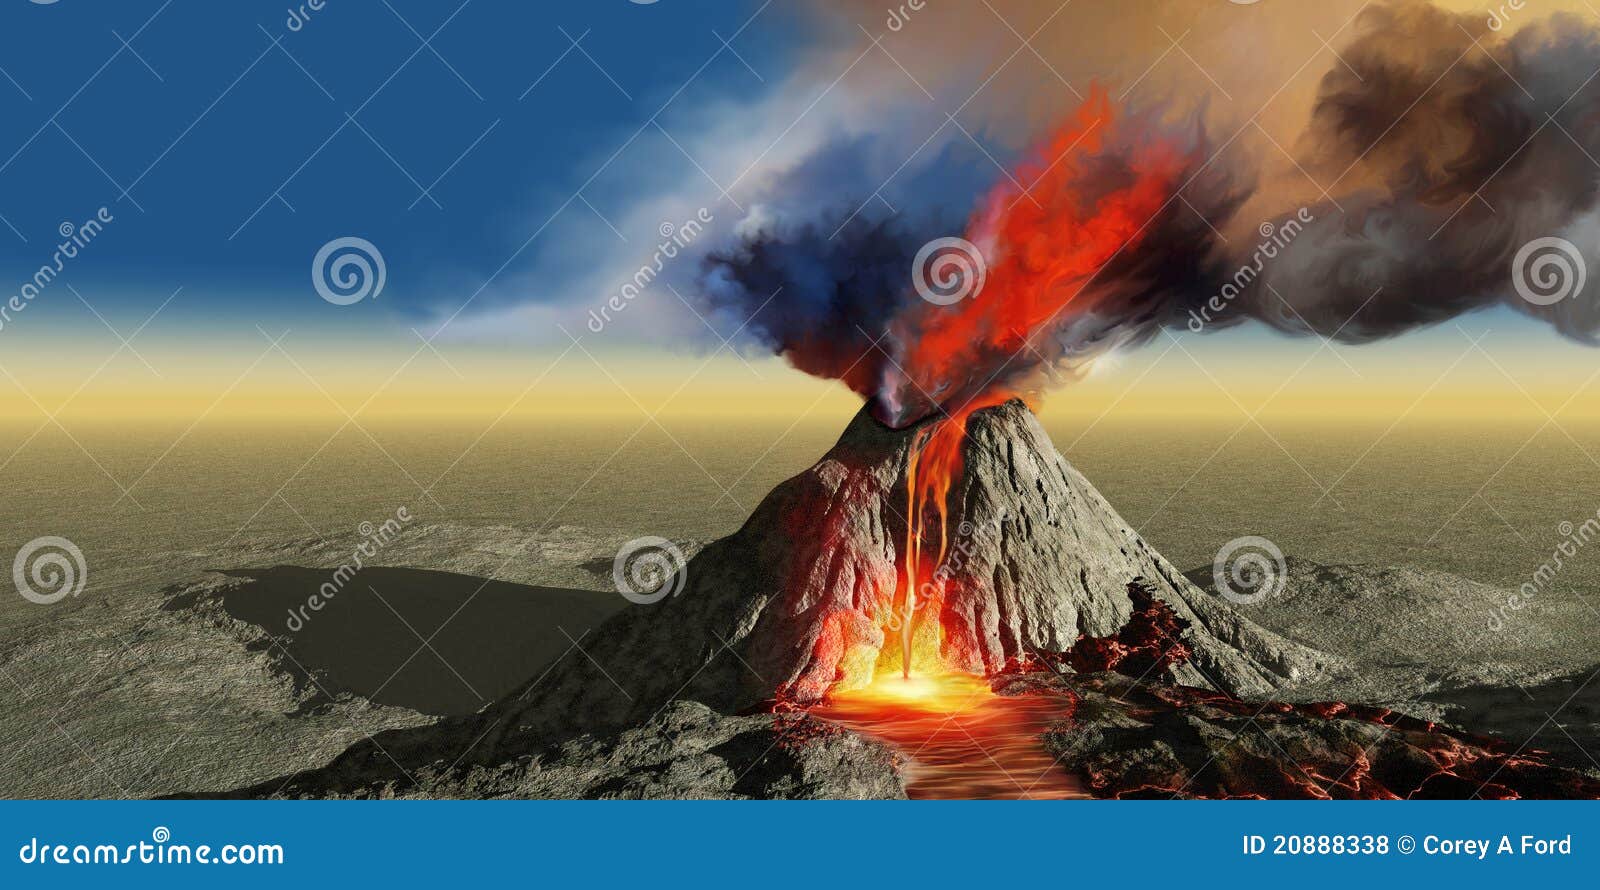 volcano smoke